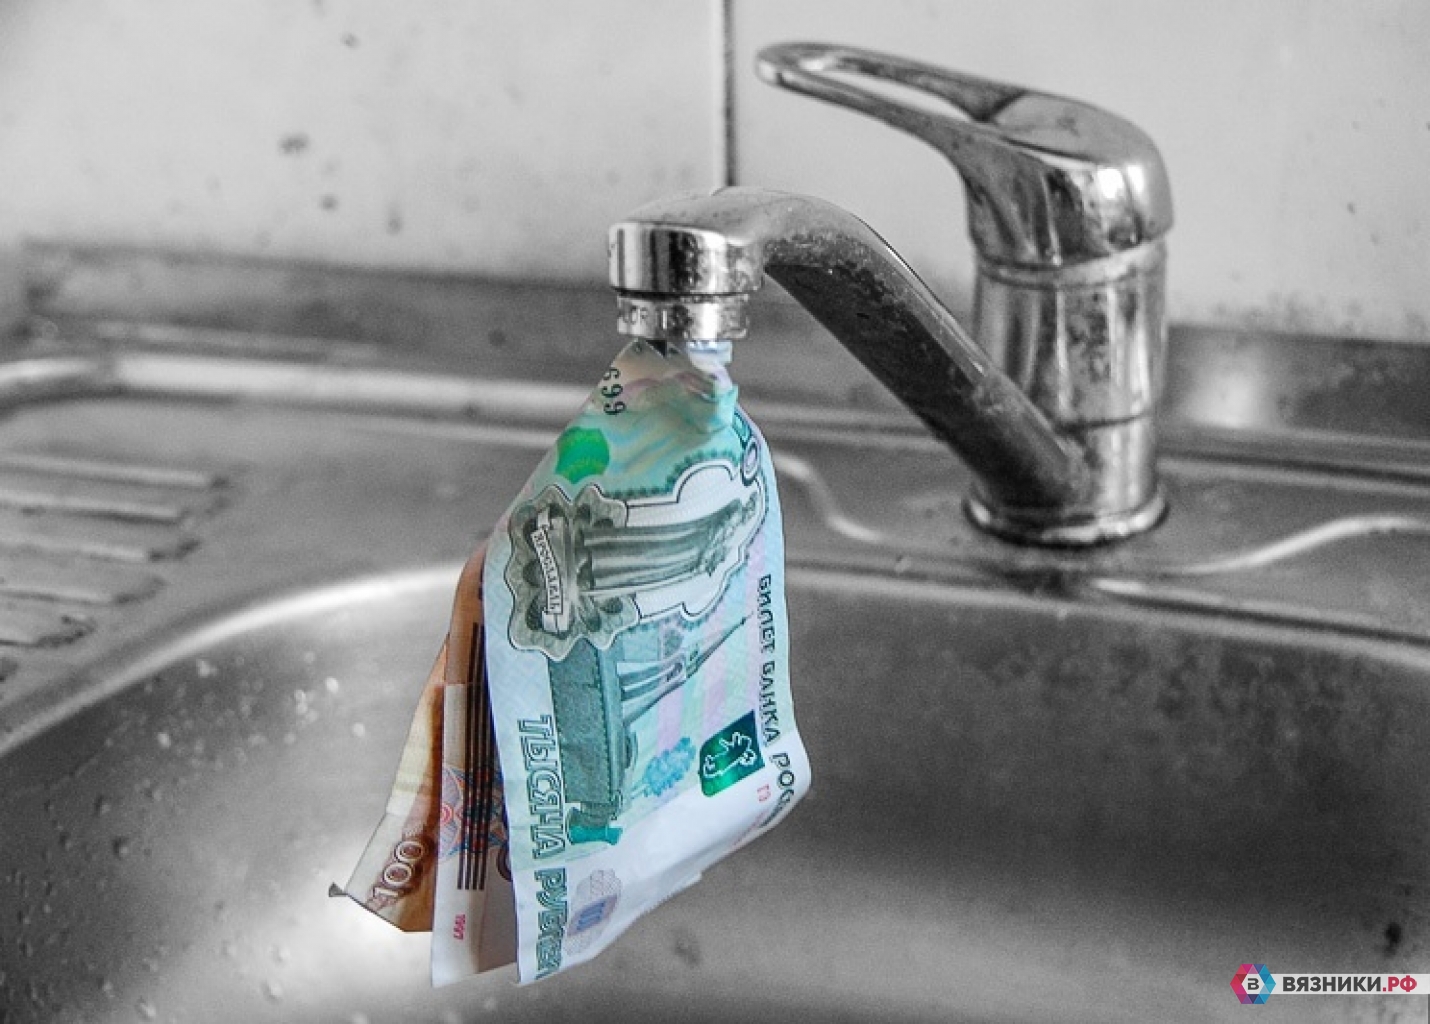 Плата за воду в квартире. Кран с водой. Кран с деньгами. Плата за воду. Кран вода деньги.